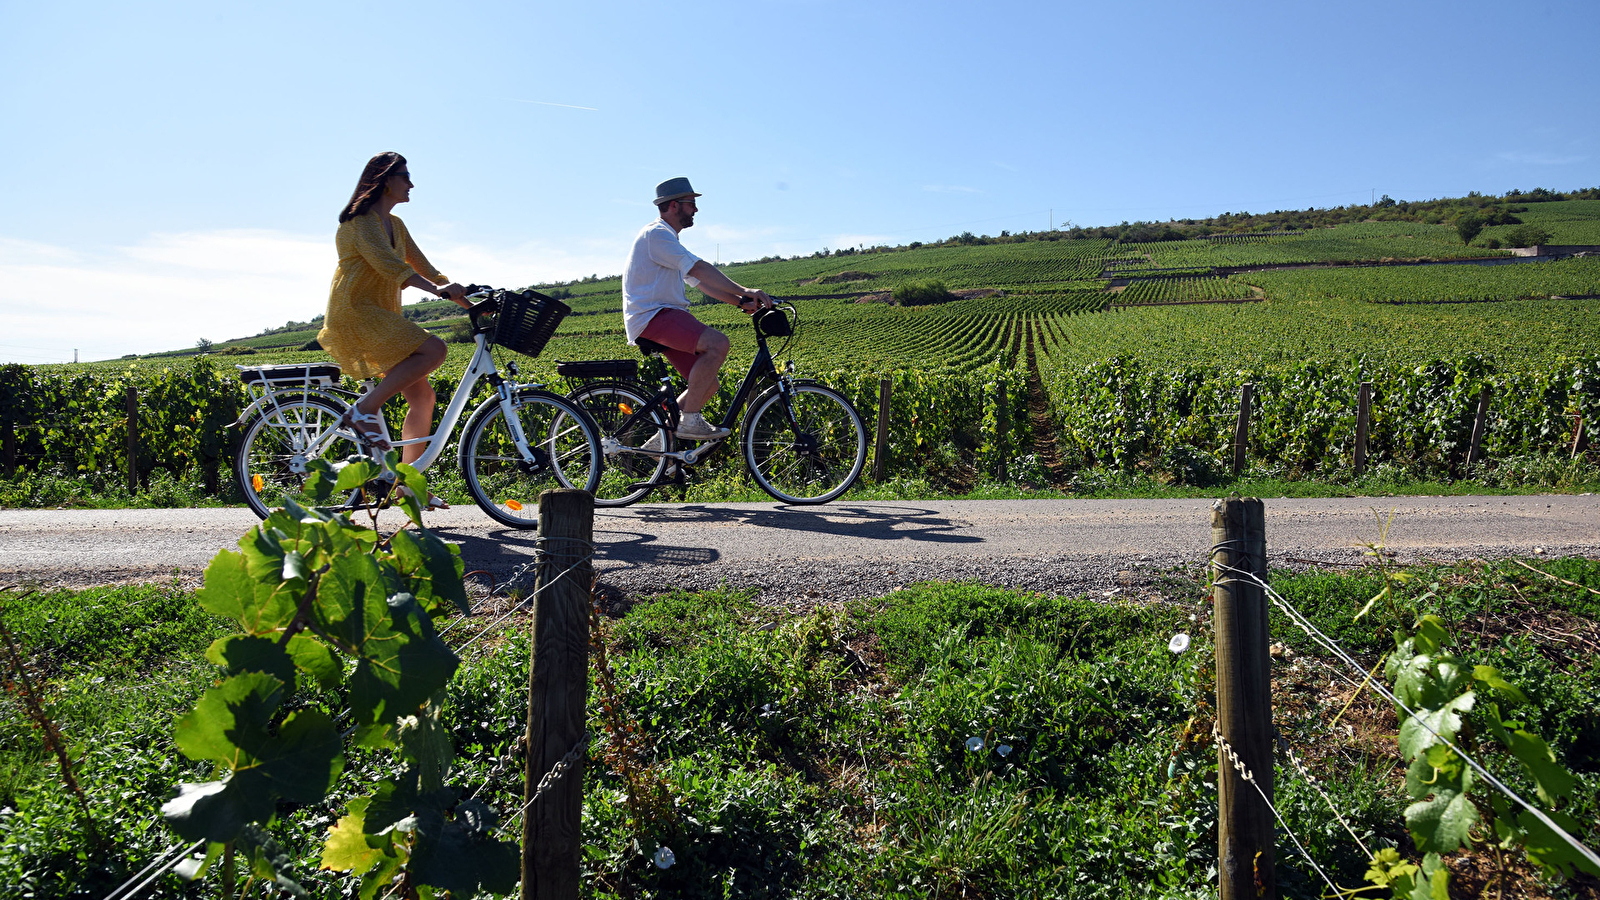 Location de vélo à assistance électrique - Gevrey-Chambertin